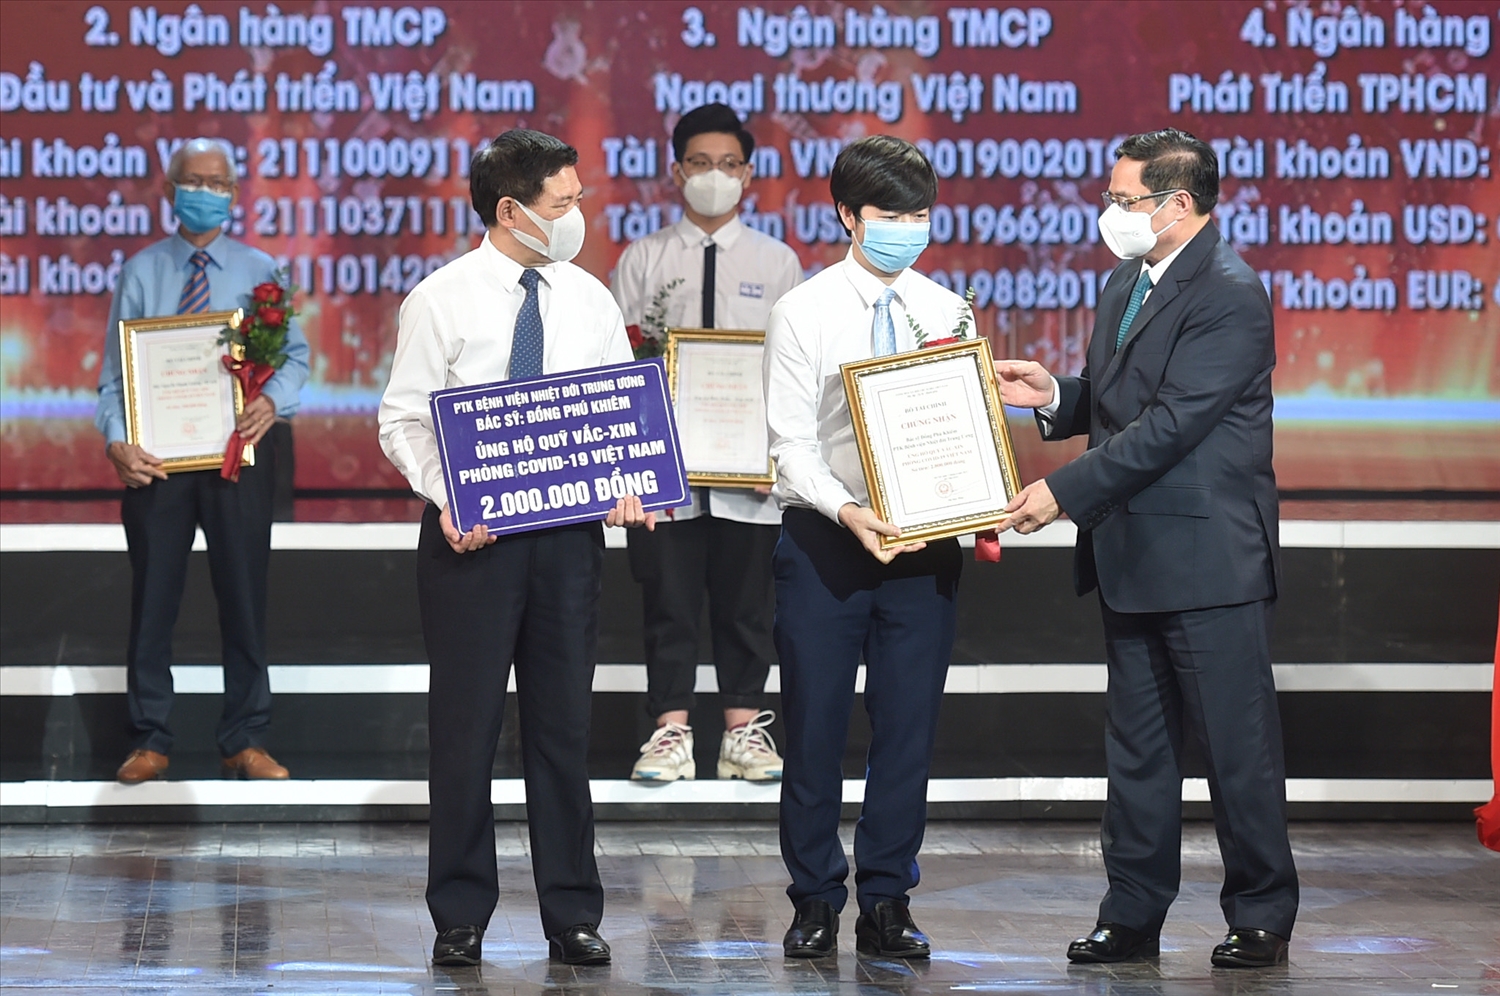 Thủ tướng Chính phủ Phạm Minh Chính trao chứng nhận, hoa cảm ơn Bác sĩ Đồng Phú Khiêm, Phó trưởng khoa điều trị tích cực - Bệnh viện Bệnh Nhiệt đới Trung ương. Ảnh: VGP